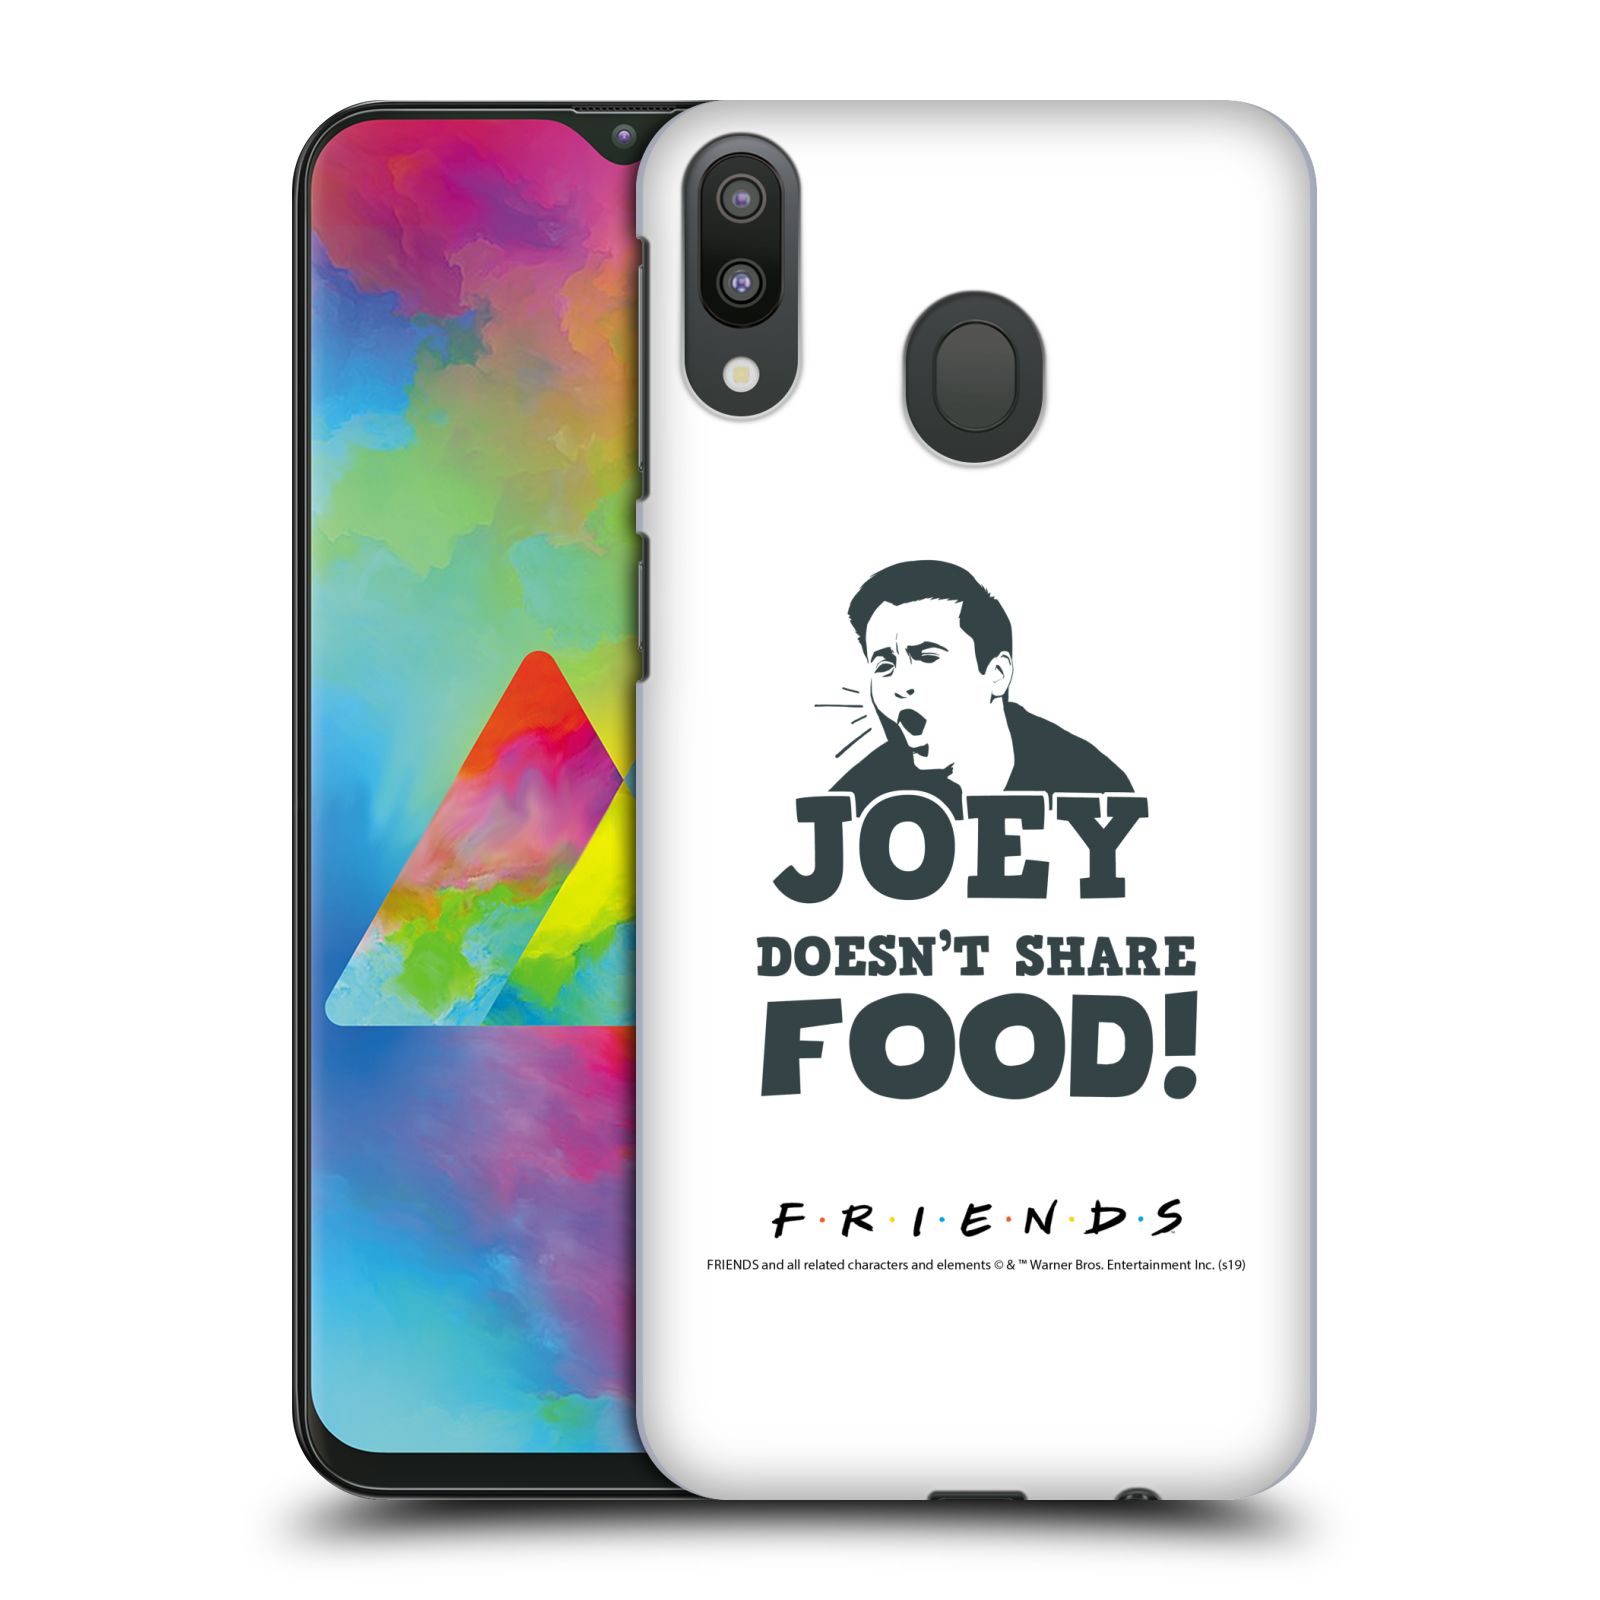 Pouzdro na mobil Samsung Galaxy M20 - HEAD CASE - Seriál Přátelé - Joey se o jídlo nedělí